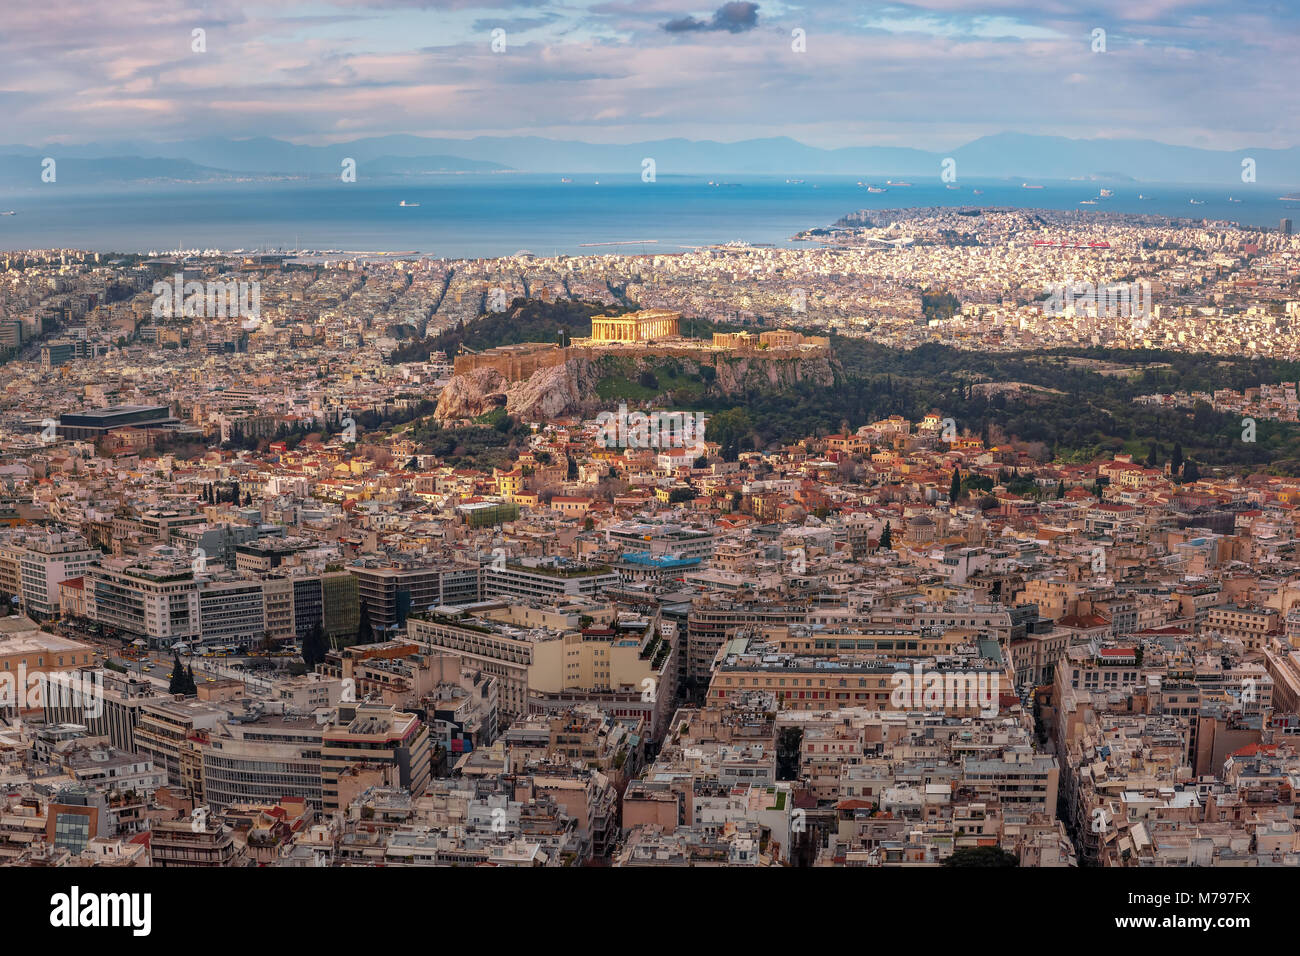 La Colina de la Acrópolis y el Partenón de Atenas, Grecia Foto de stock